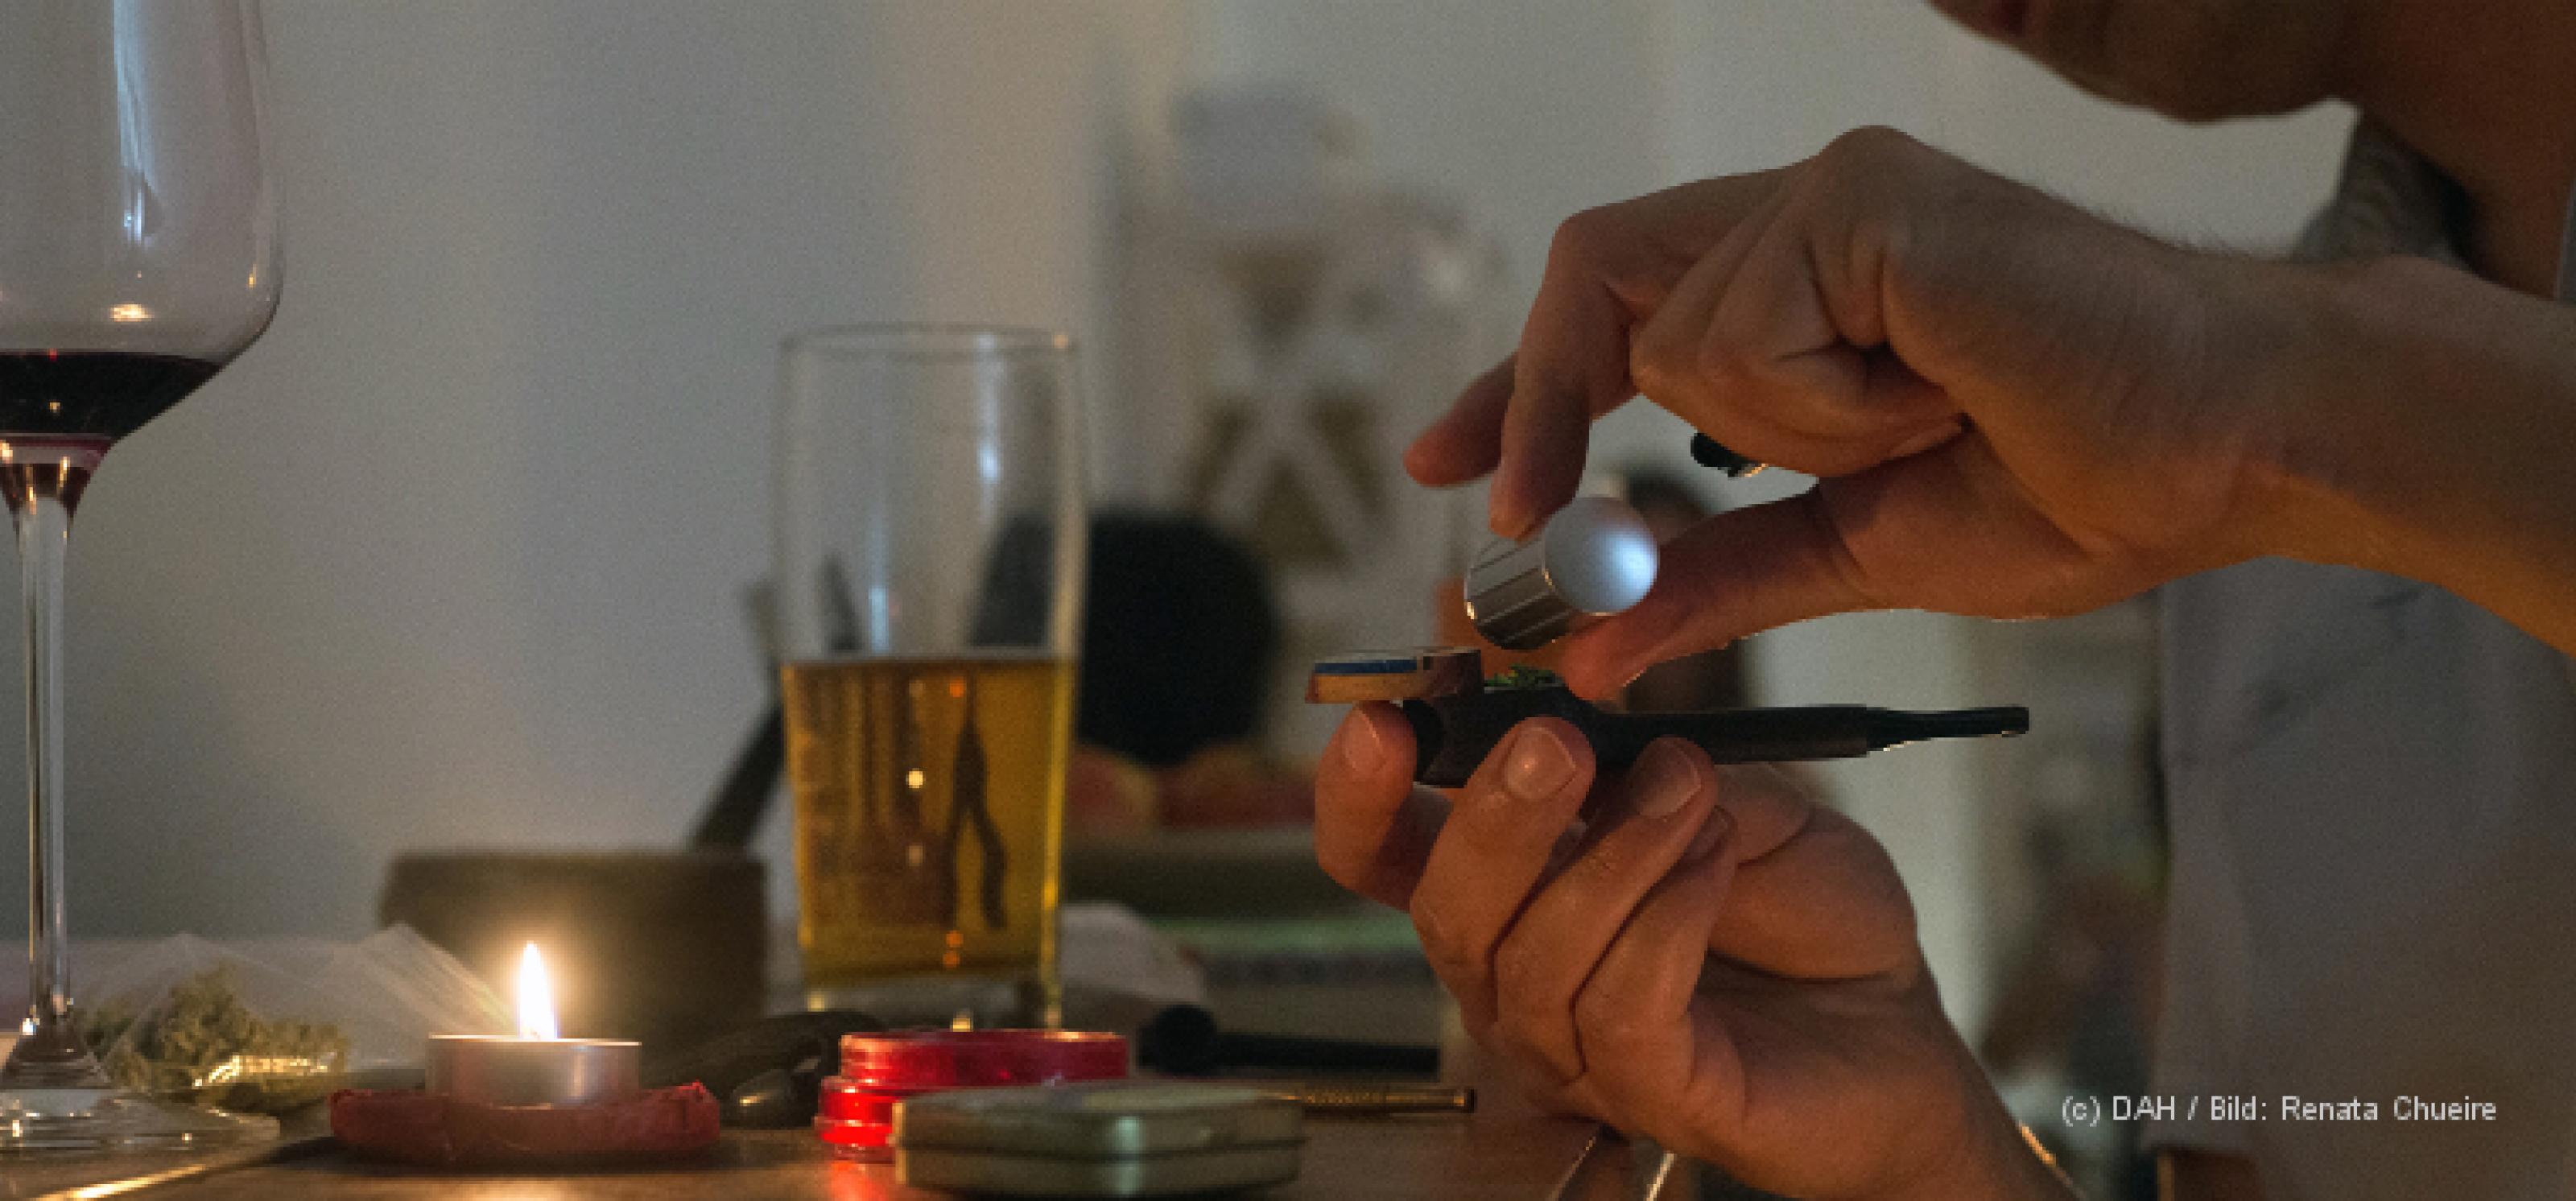 Auf einem Tisch befinden sich verschiedene Drogen: Ein Glas Bier, ein Glas Wein, eine Tüte mit Cannabis, zudem ein Sniefröhrchen, ein brennendes Teelicht und ein Mörser. Davor sitzt eine Person, die sich etwas in eine Pfeife füllt.